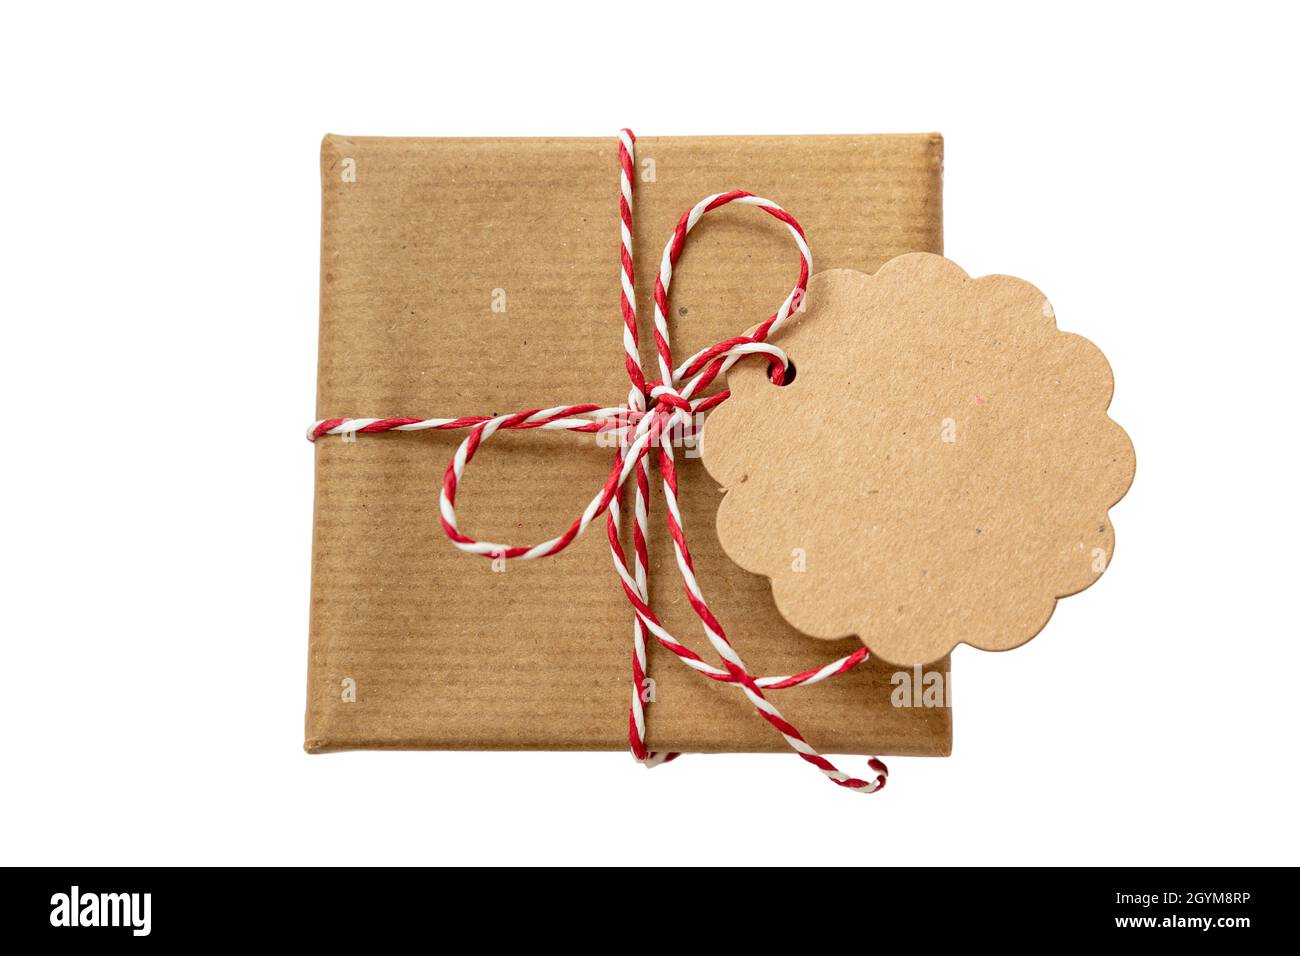 Weihnachtsgeschenkbox mit unbeschriftete runde Note Karte, braunes Kraftpapier Urlaub Geschenk mit rot weiß gestreiften String gebunden Bogen isoliert Ausschnitt auf weißem Rücken Stockfoto